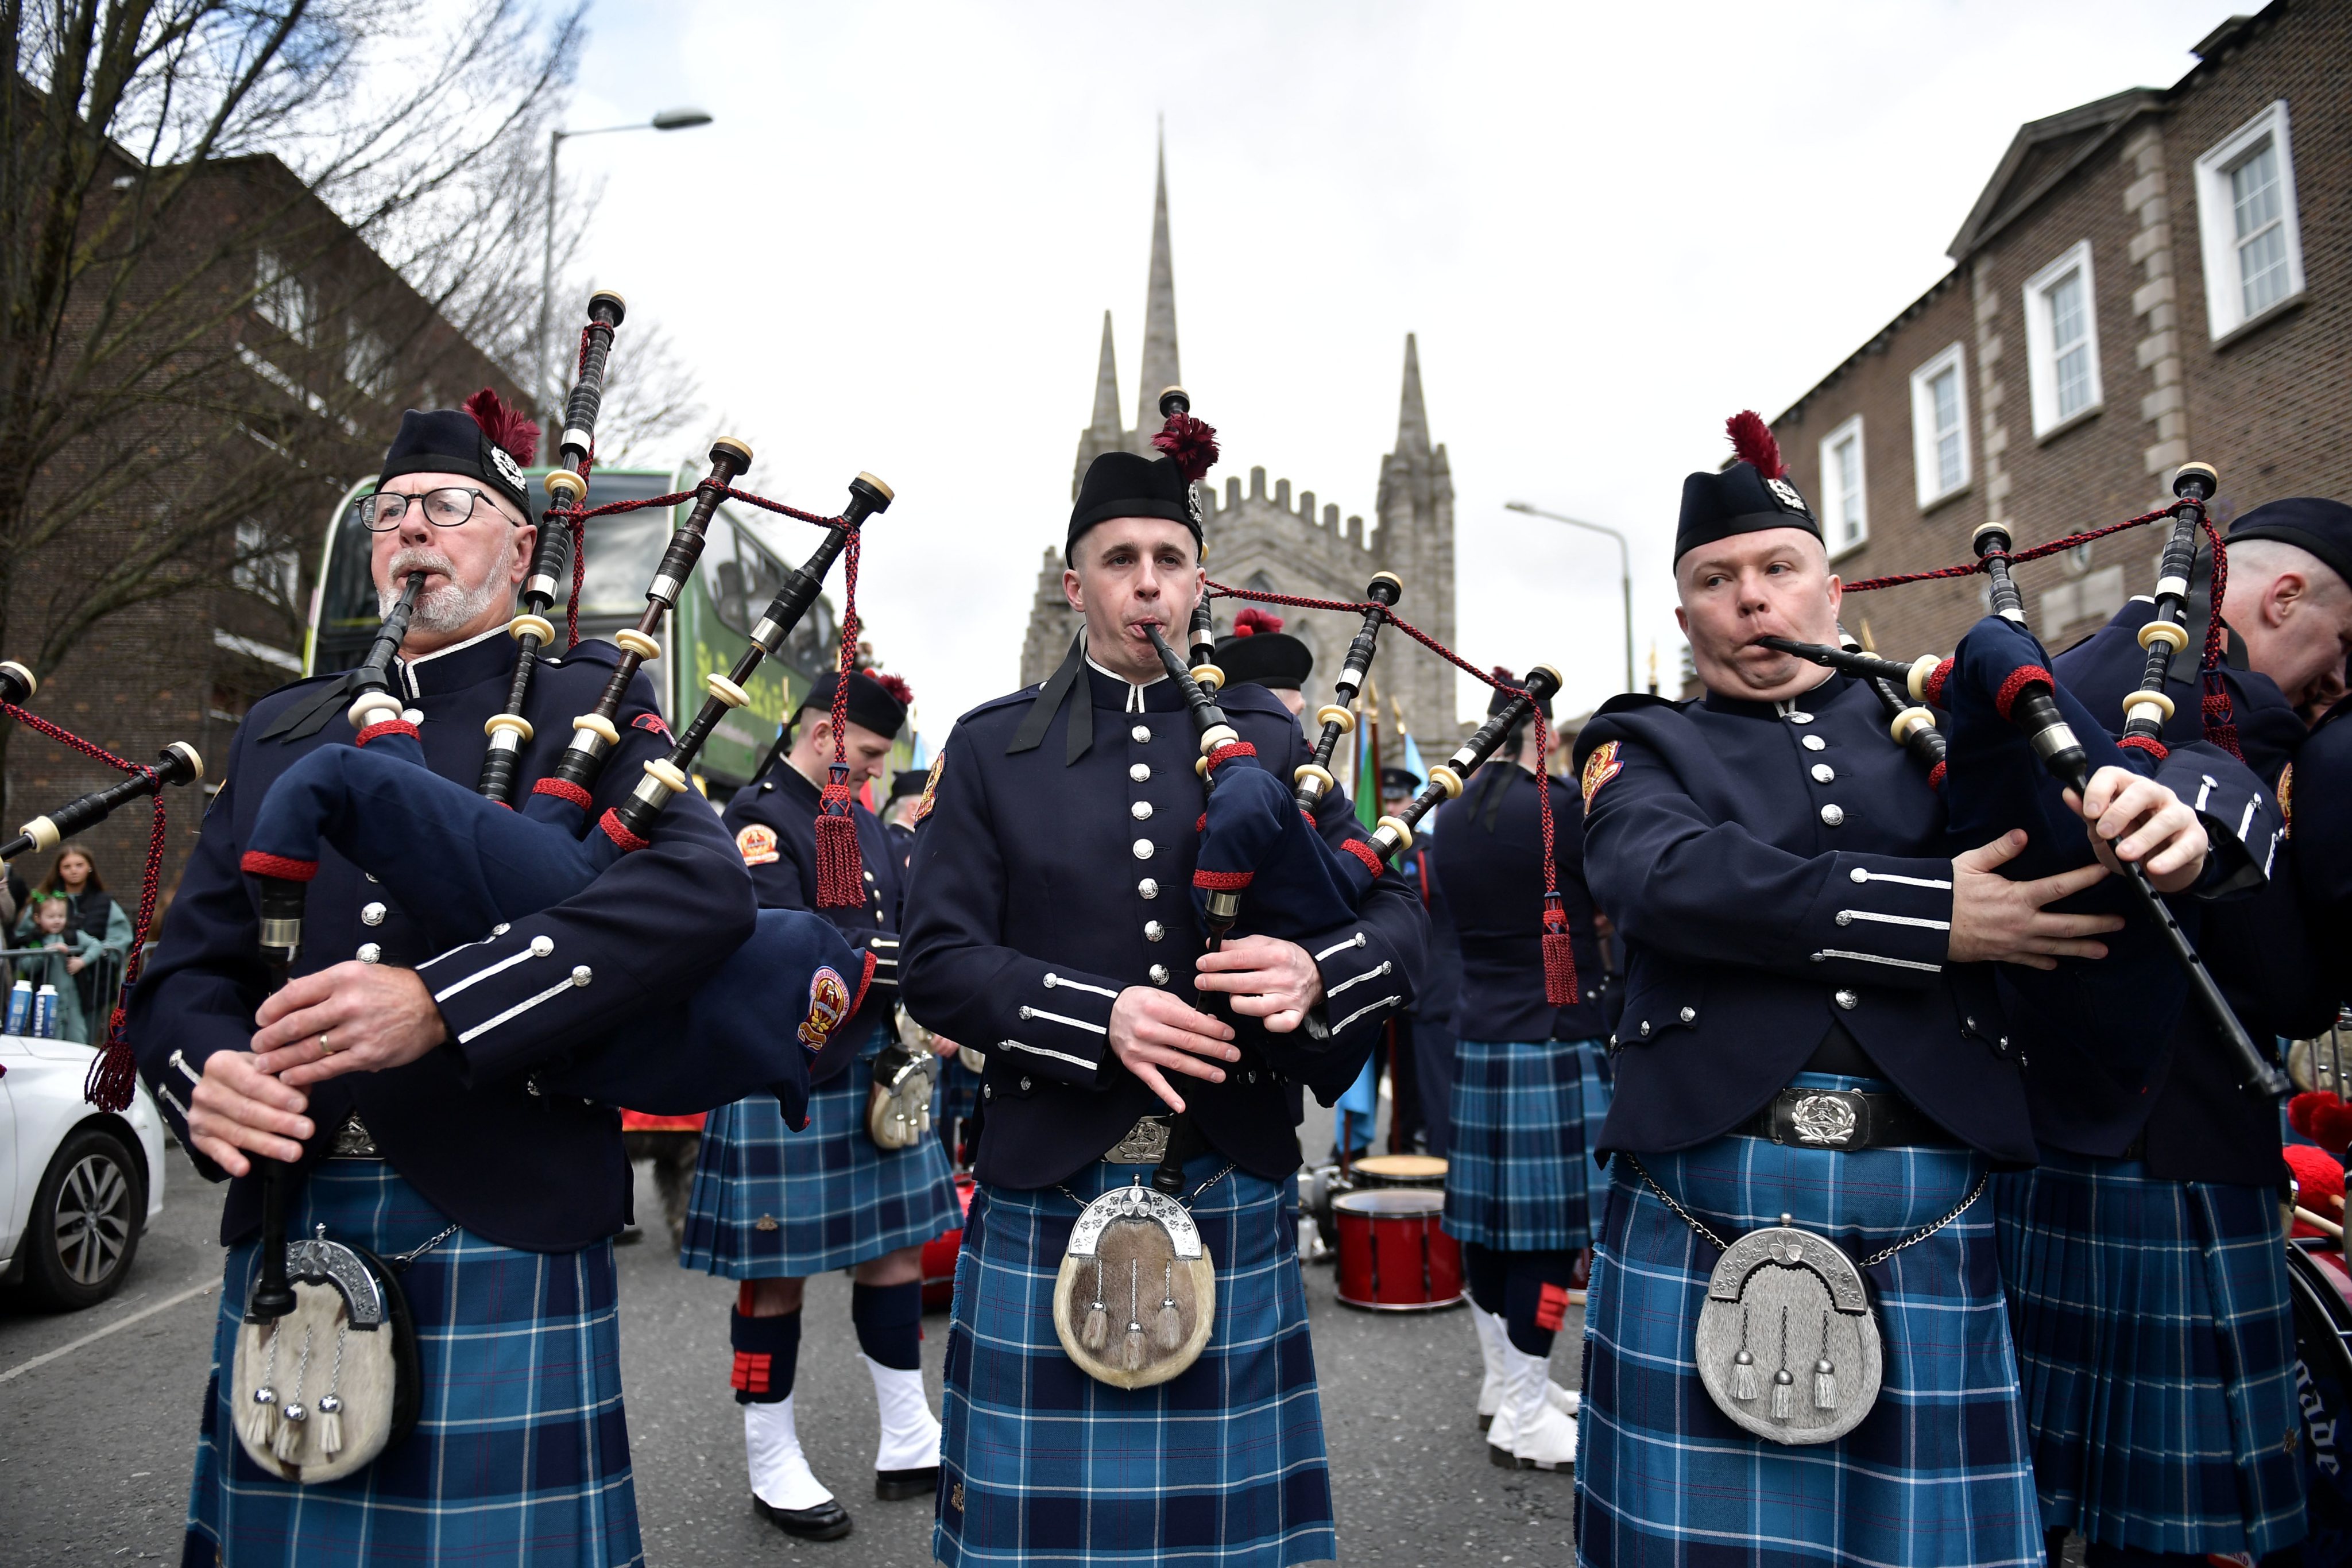 Uma banda de gaitas-de-foles na marcha do Dia de São Patrício em Dublin, na Irlanda